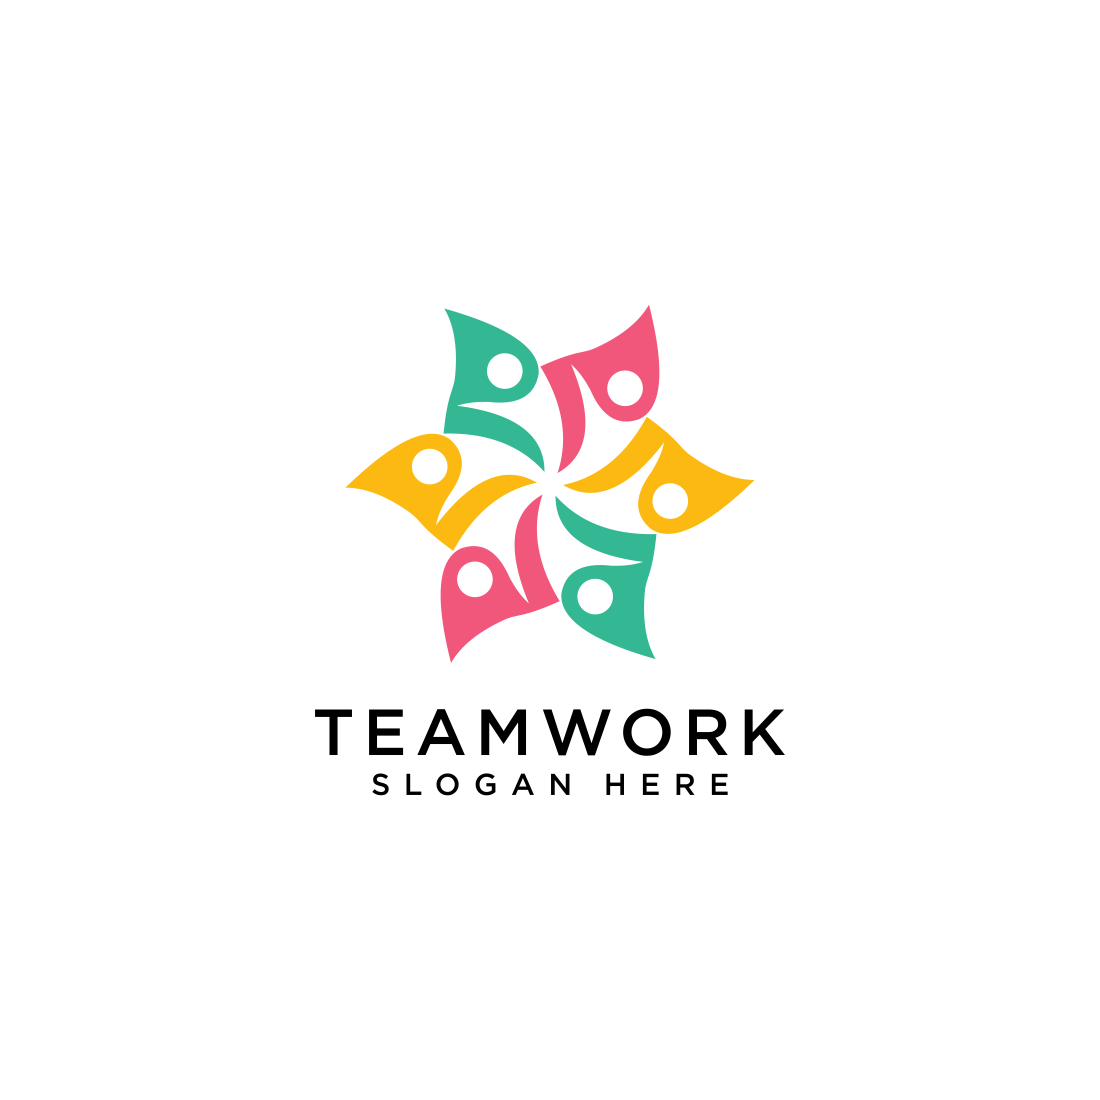 teamwork logo vector design preview image.